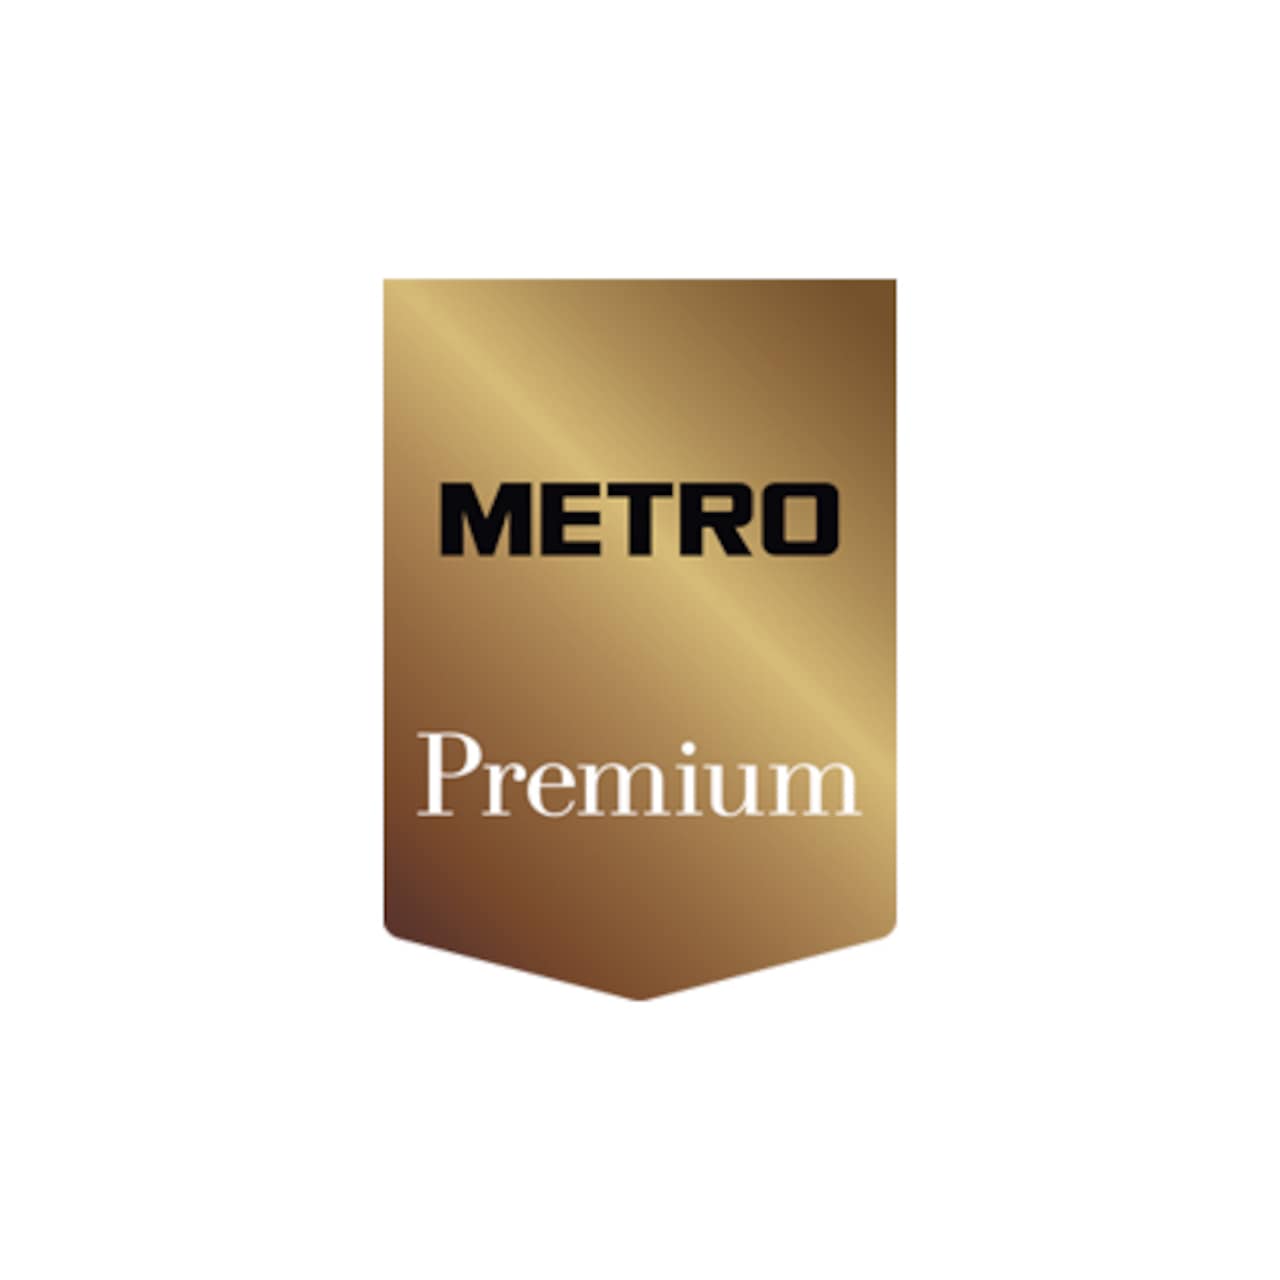 metro premium logo